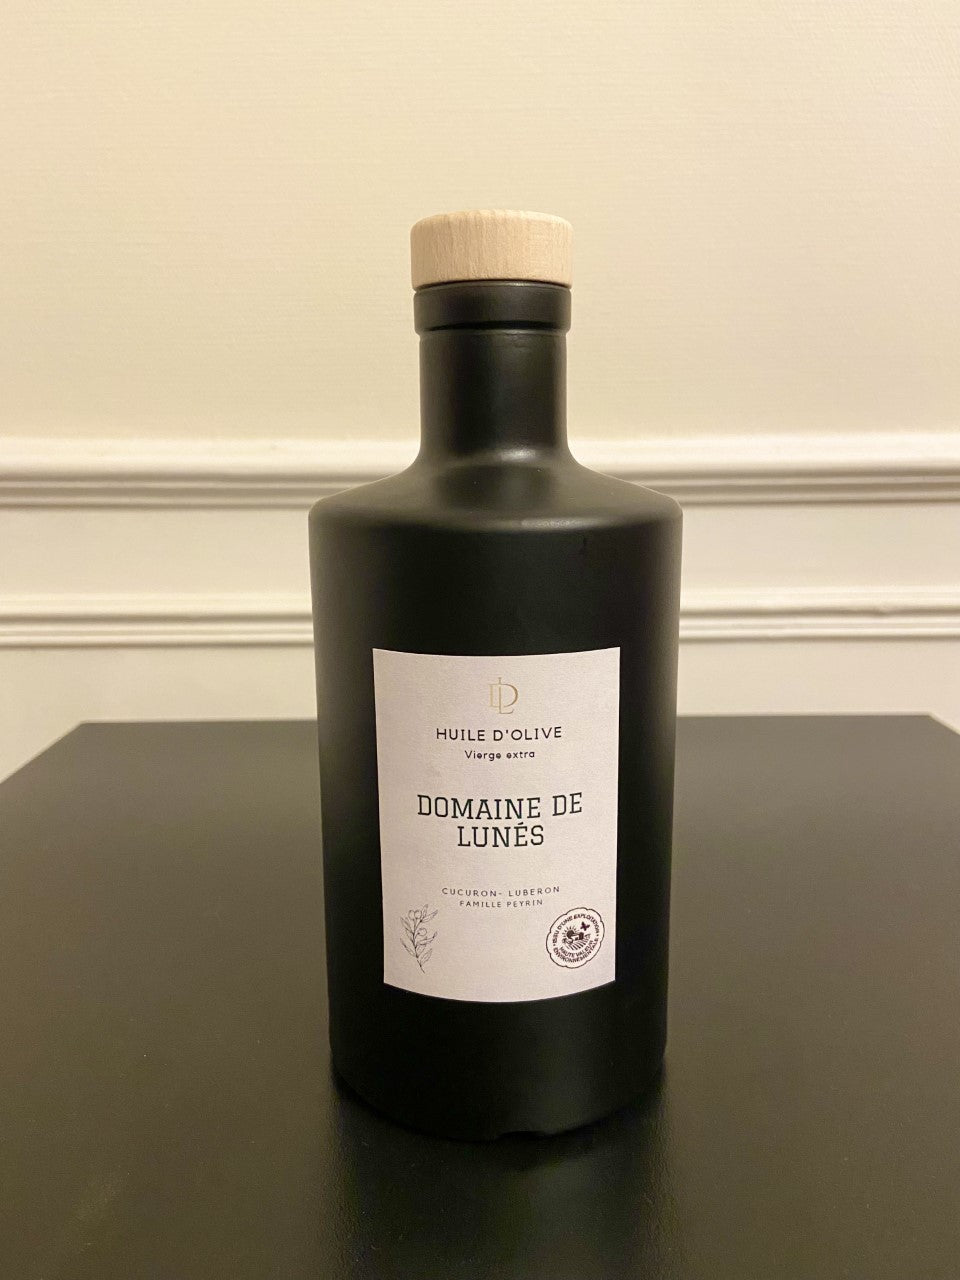 Huile d'olive bouteille noire 0.5 Litre – Domaine de Lunés